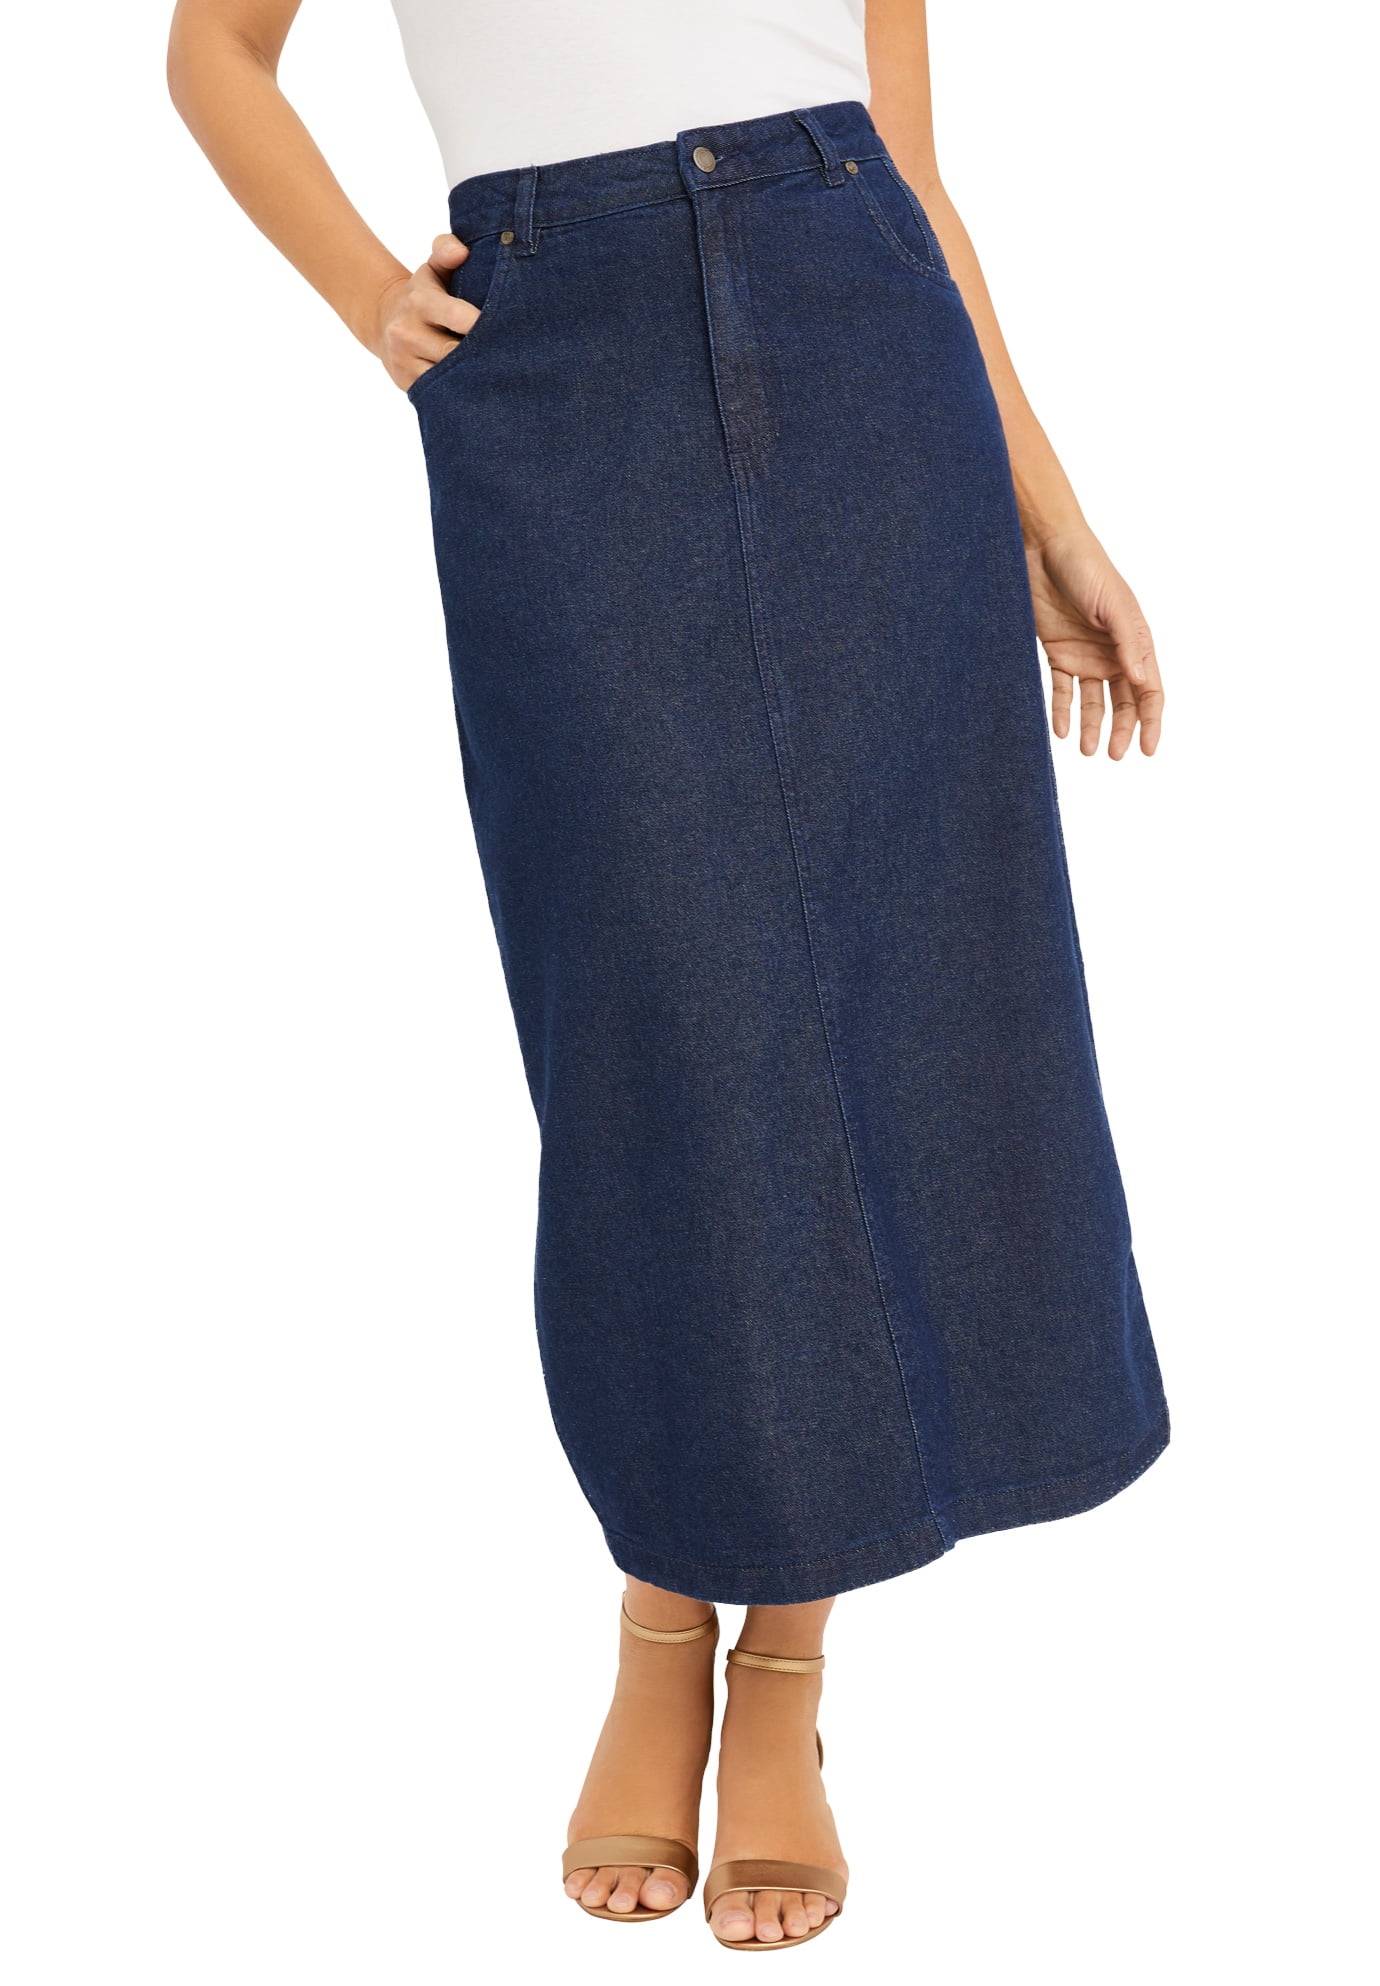 Jessica London Womens Plus Size Classic Cotton Denim Long Skirt 100% Cotton 